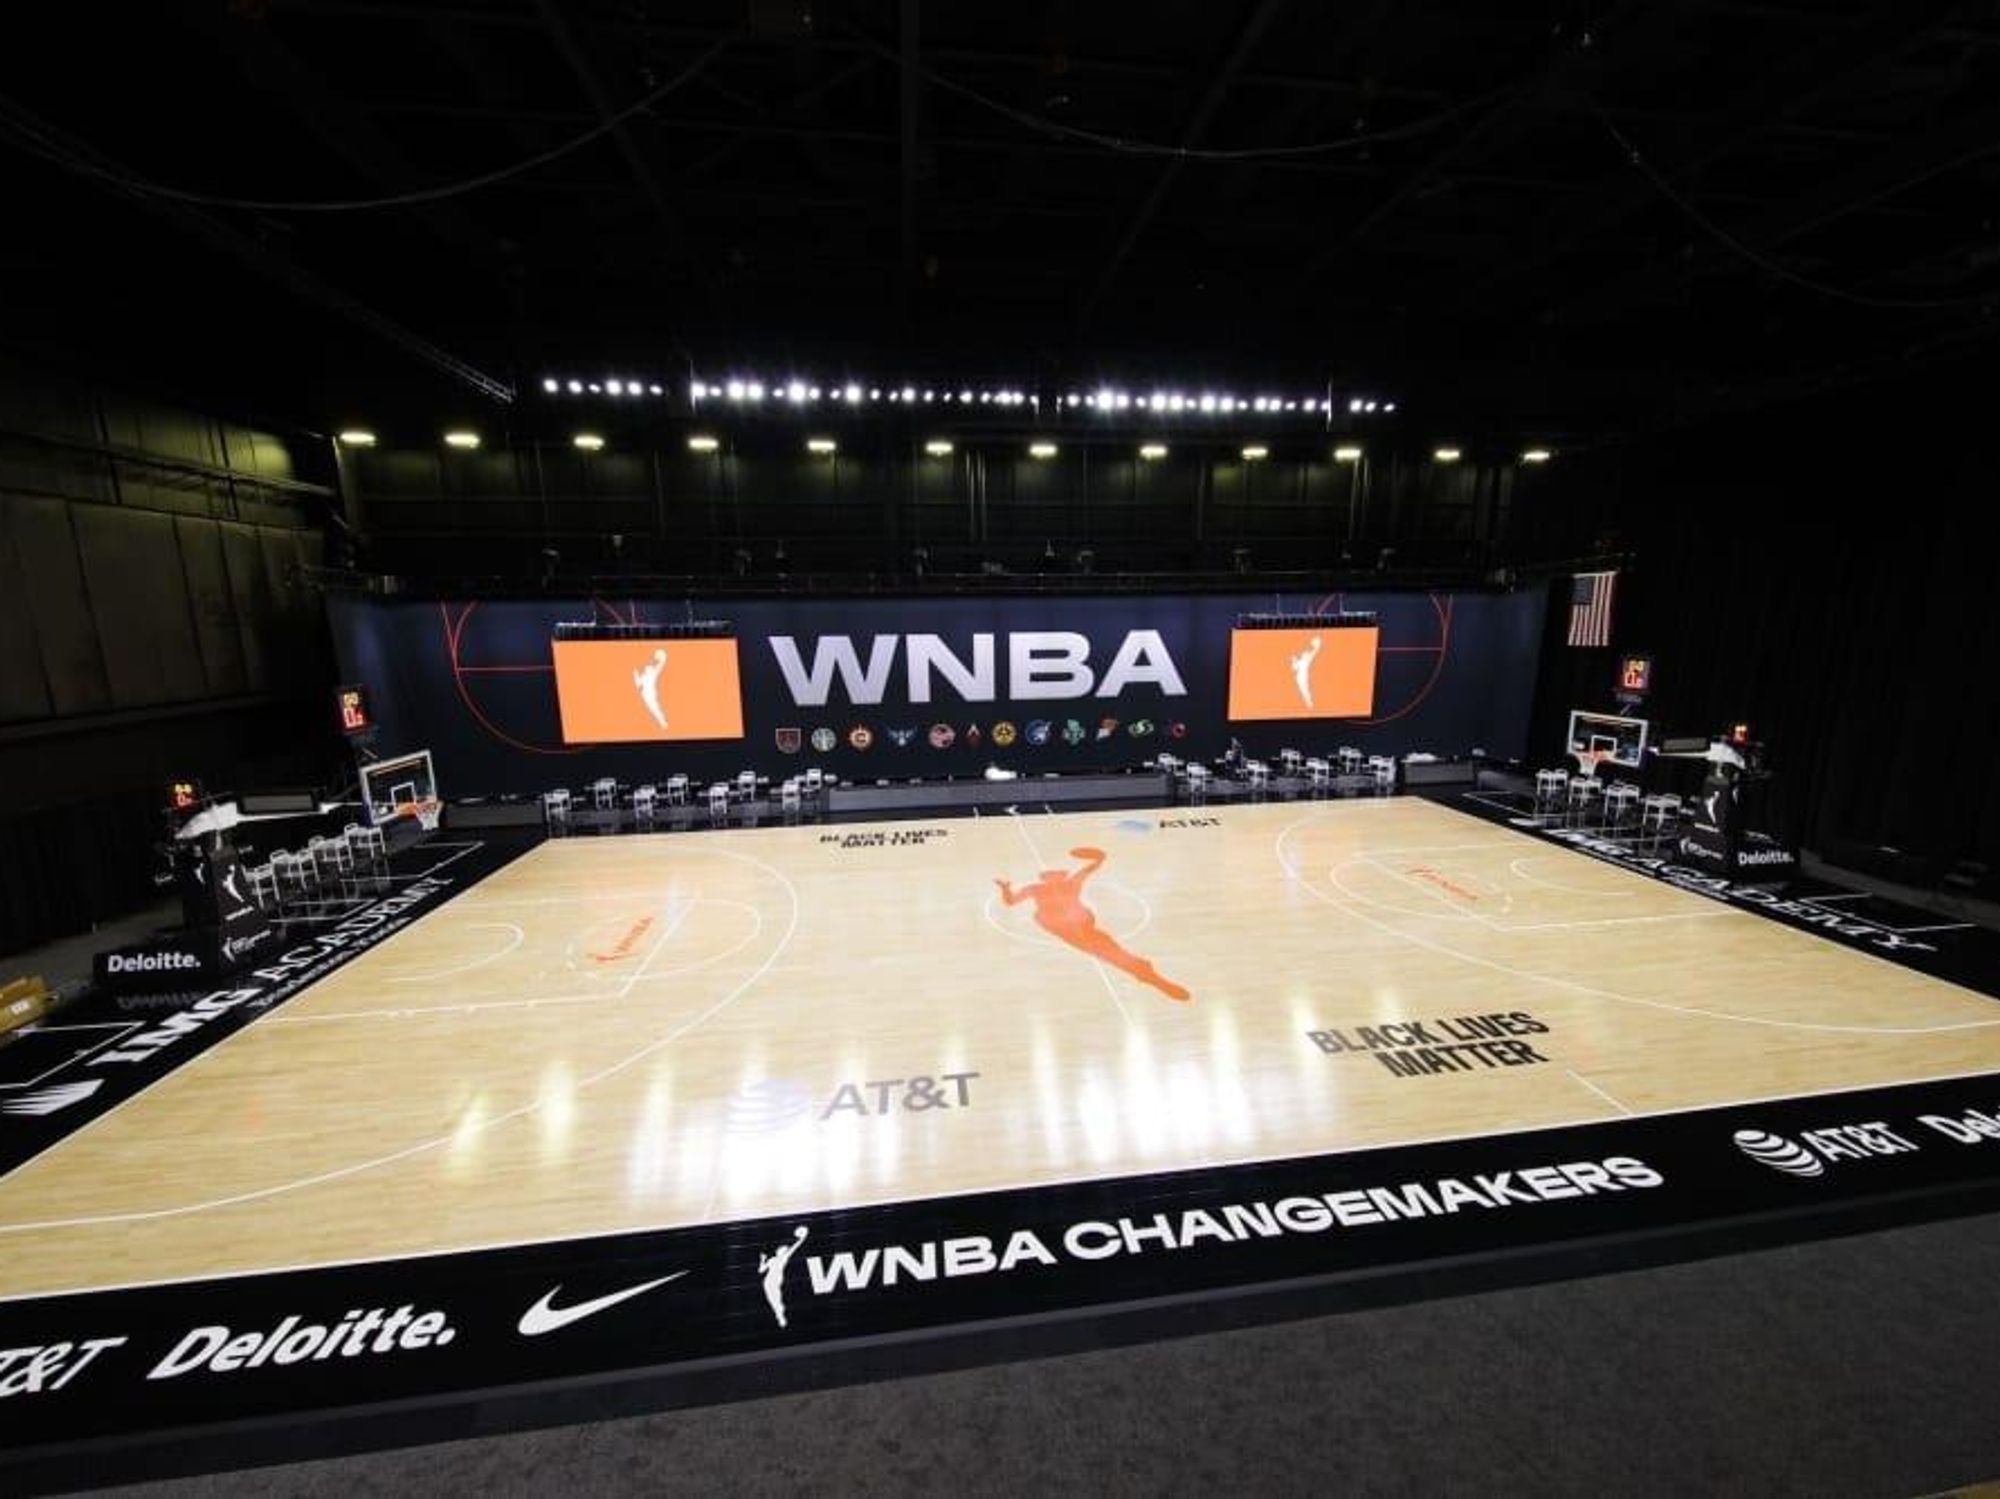 WNBA court